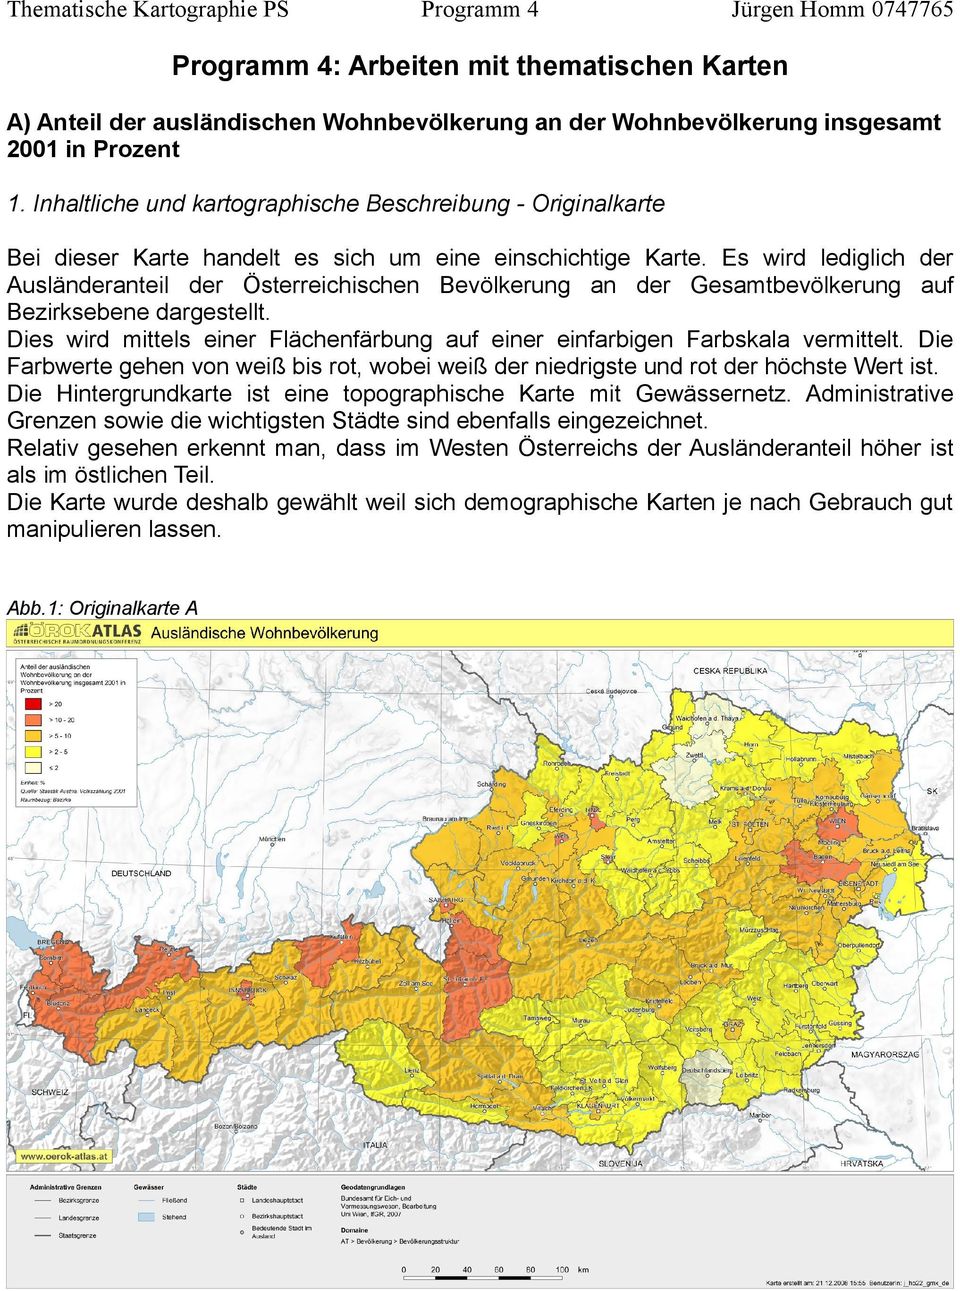 Es wird lediglich der Ausländeranteil der Österreichischen Bevölkerung an der Gesamtbevölkerung auf Bezirksebene dargestellt.